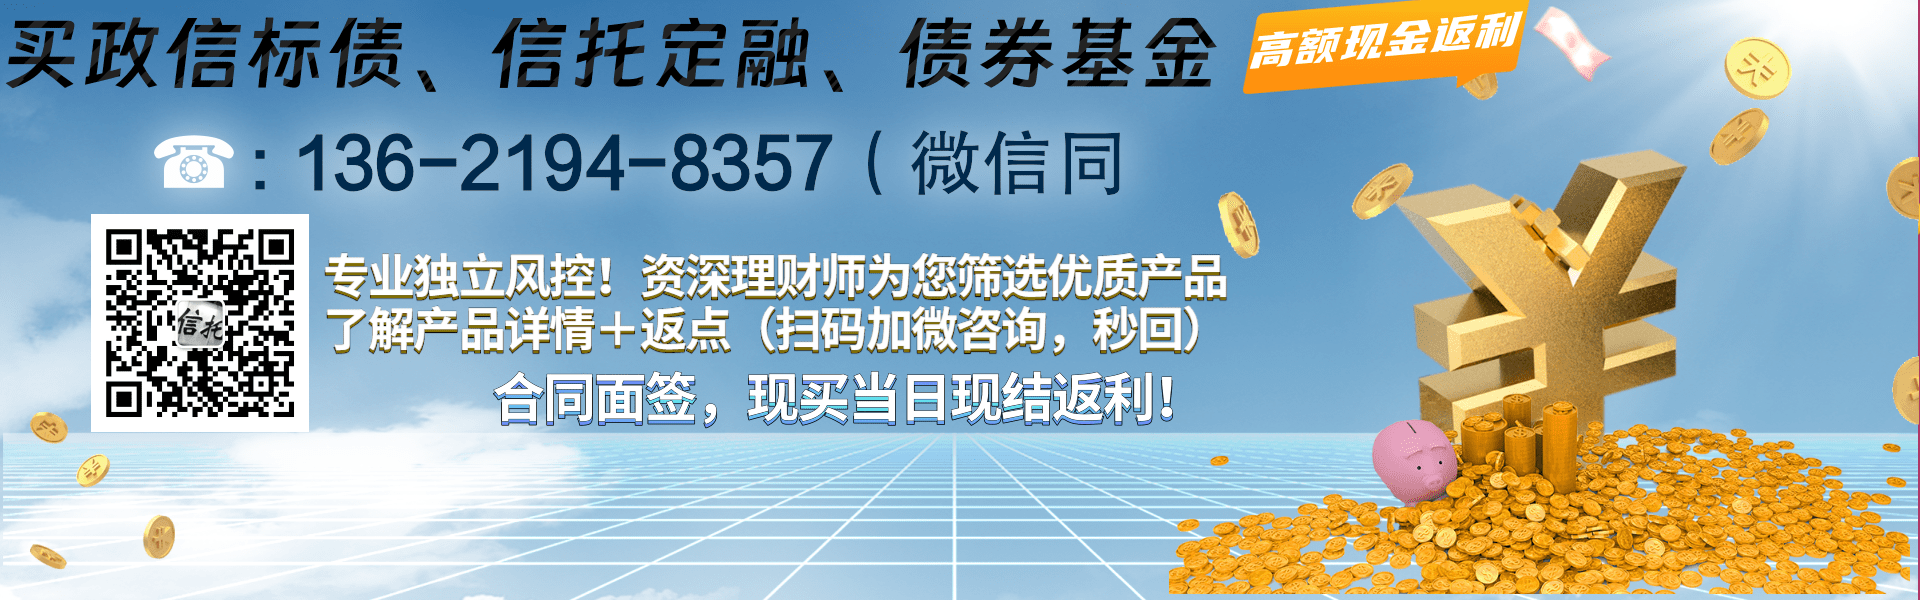 央企信托—782扬州区域政信